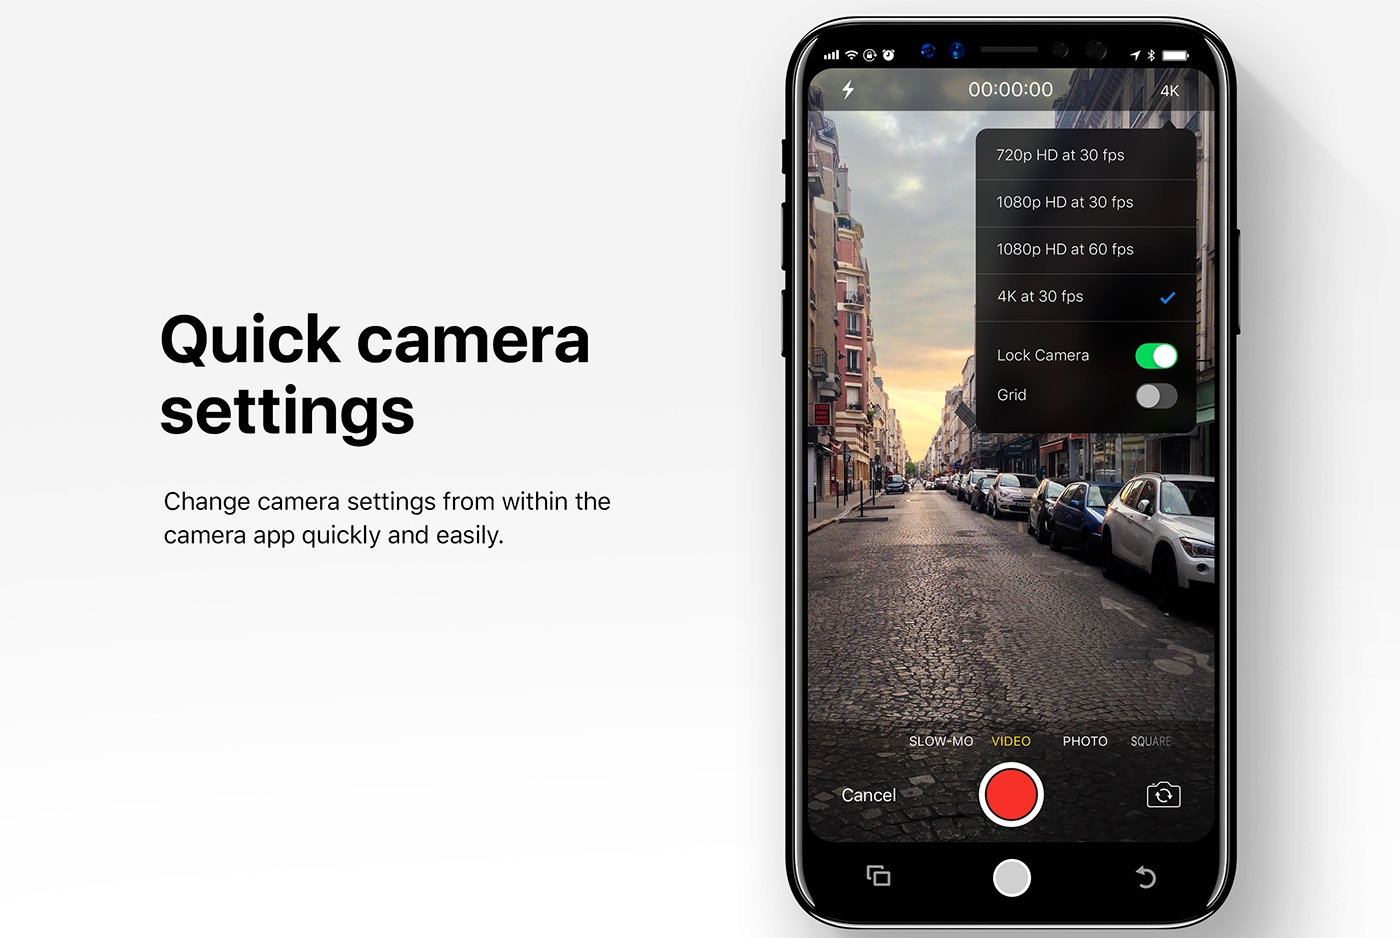 Single swipe camera setting in iOS 12